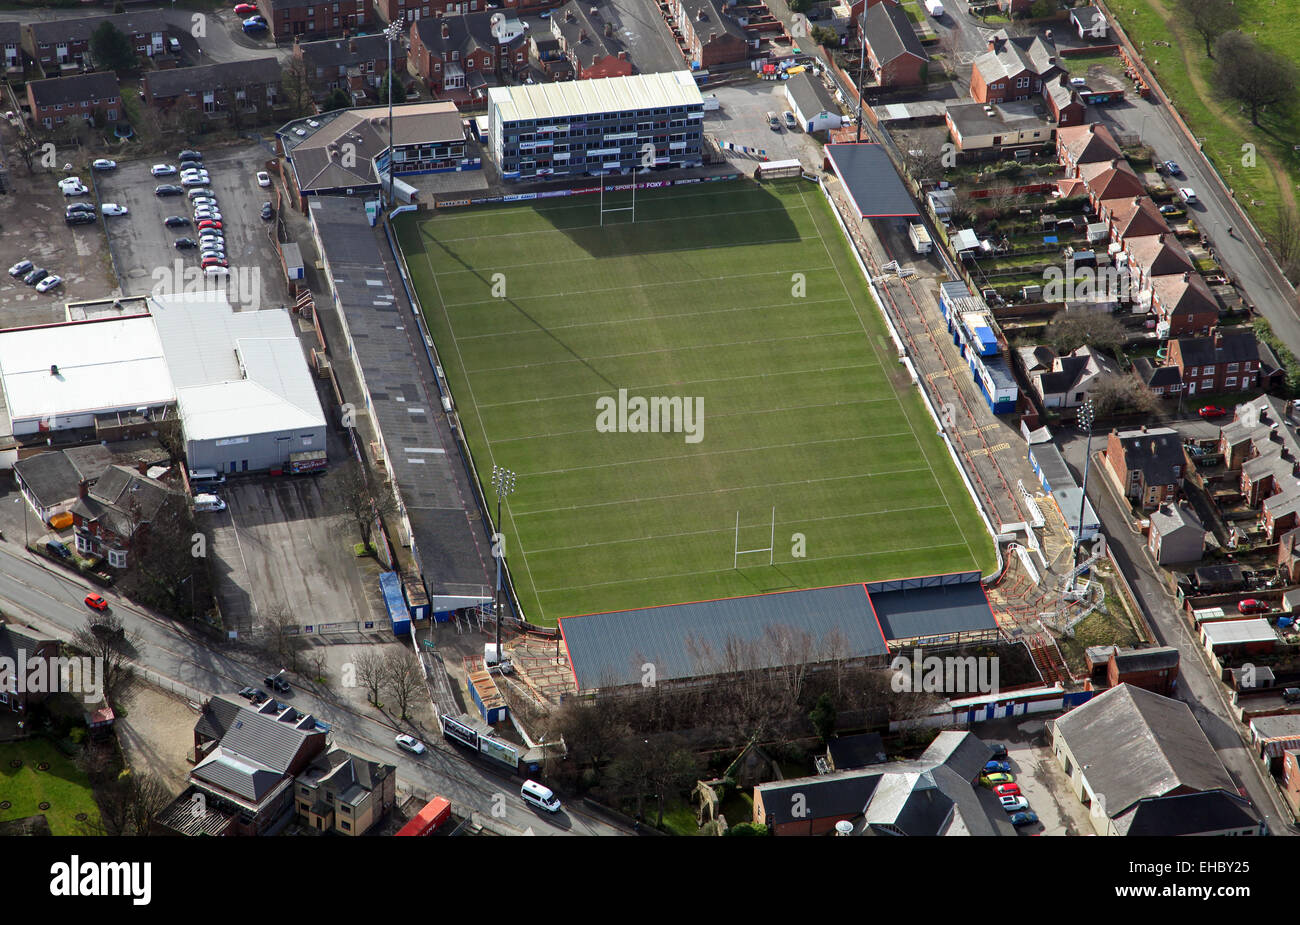 Vue aérienne de Wakefield Trinity Wildcats Rugby League stade de Belle Vue, Wakefield, Royaume-Uni Banque D'Images